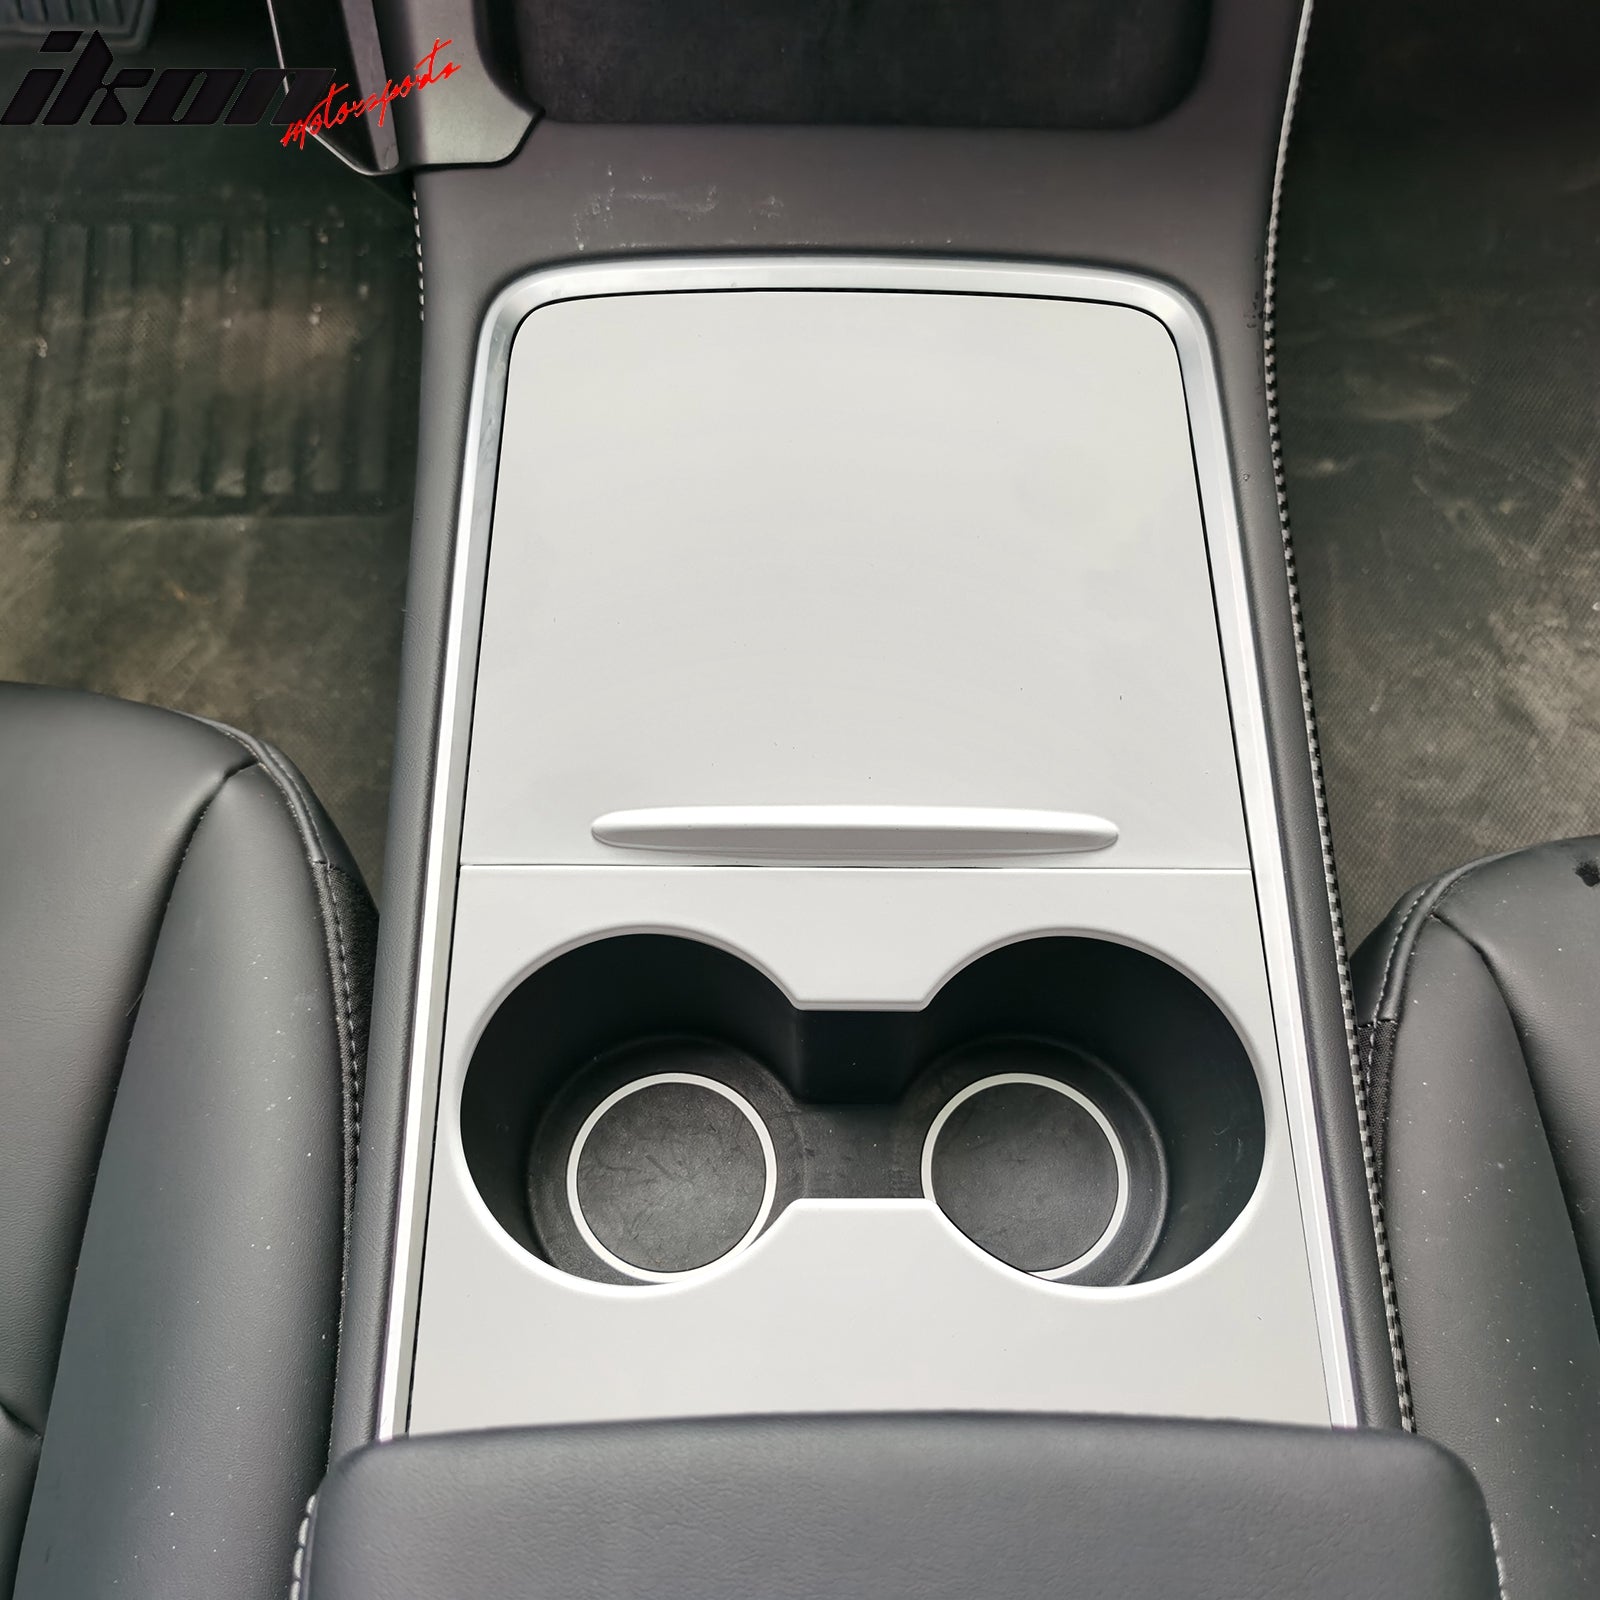 Car Storage Box For Tesla Model 3 2021 Model Y 2022 Center Armrest